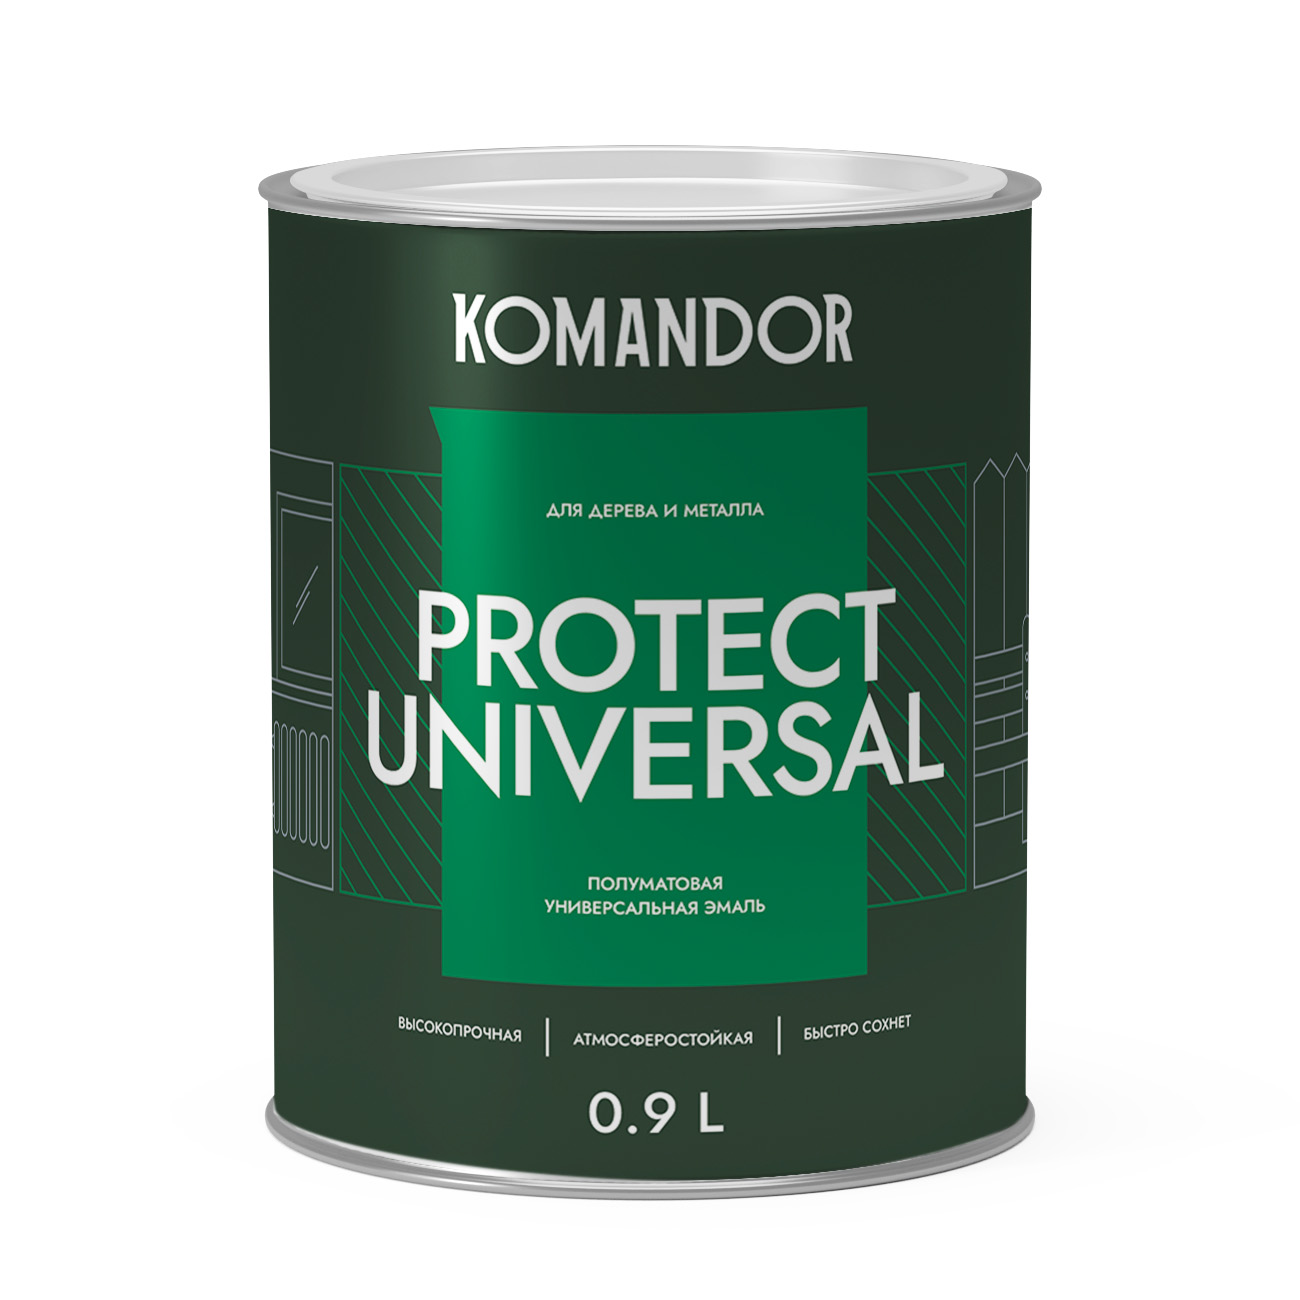 Эмаль по дереву и металлу Komandor Protect Universal A S1315001001 полуматовая 0,9 л